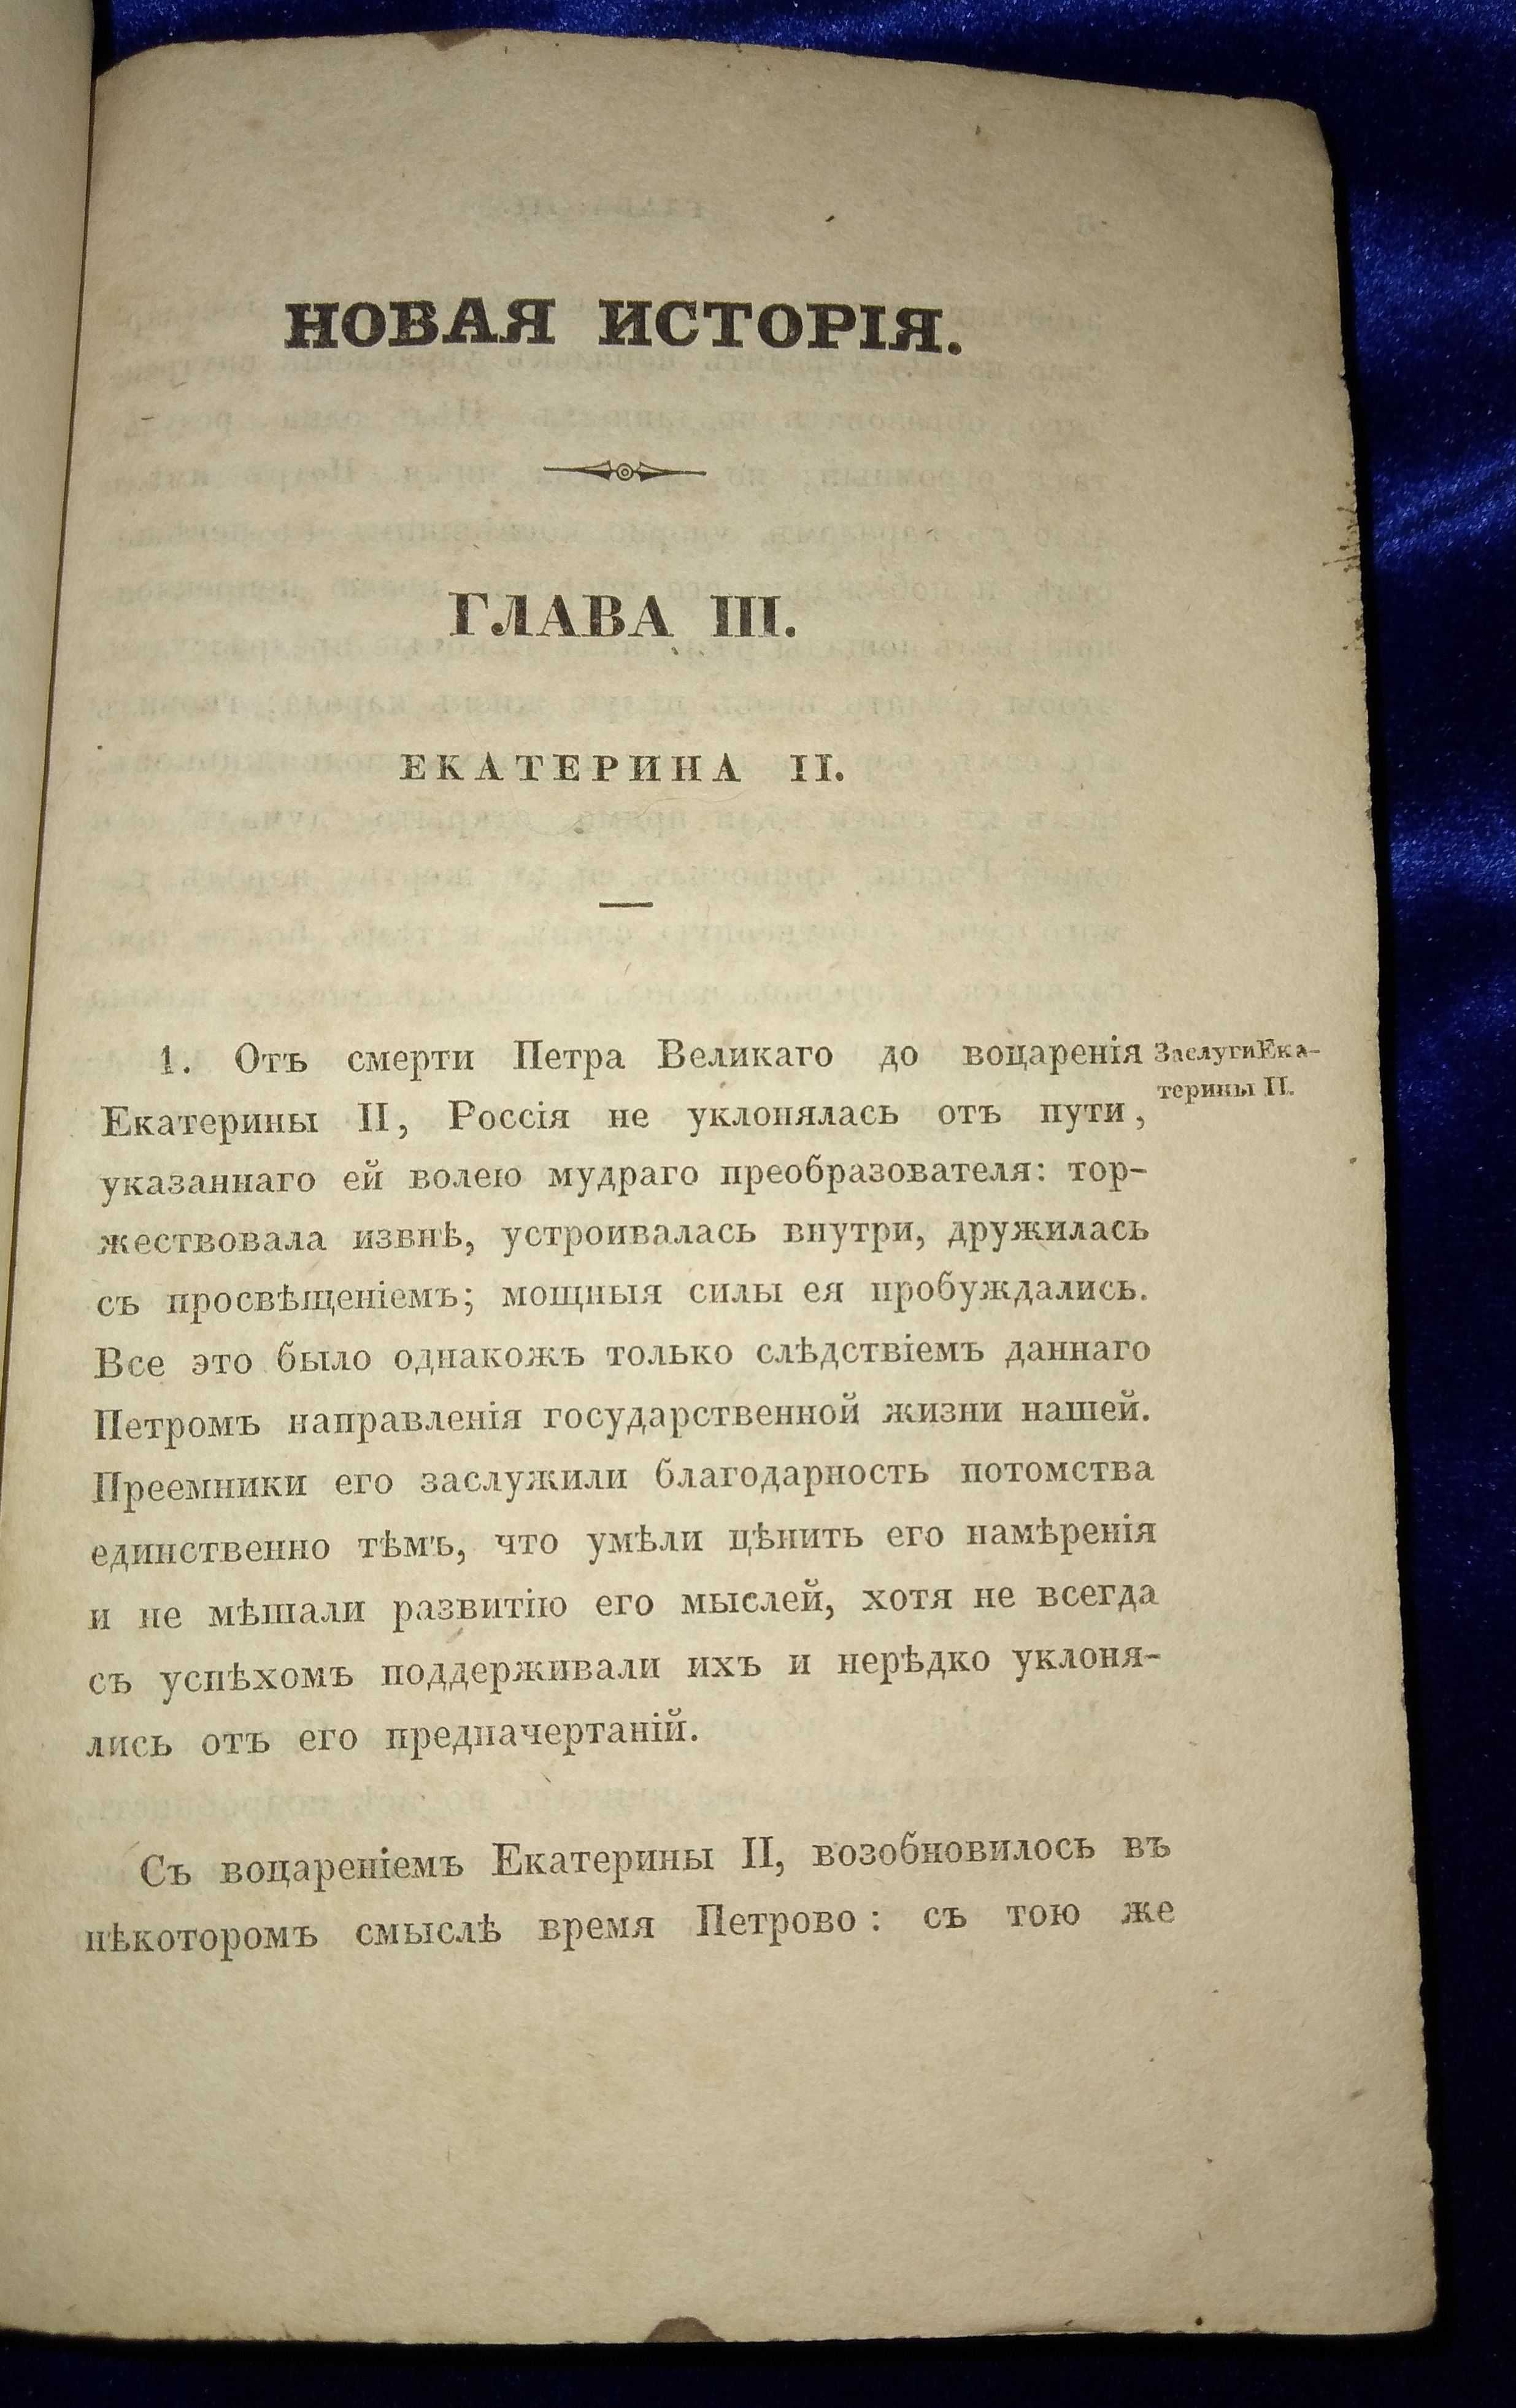 Русская история 1840 г.